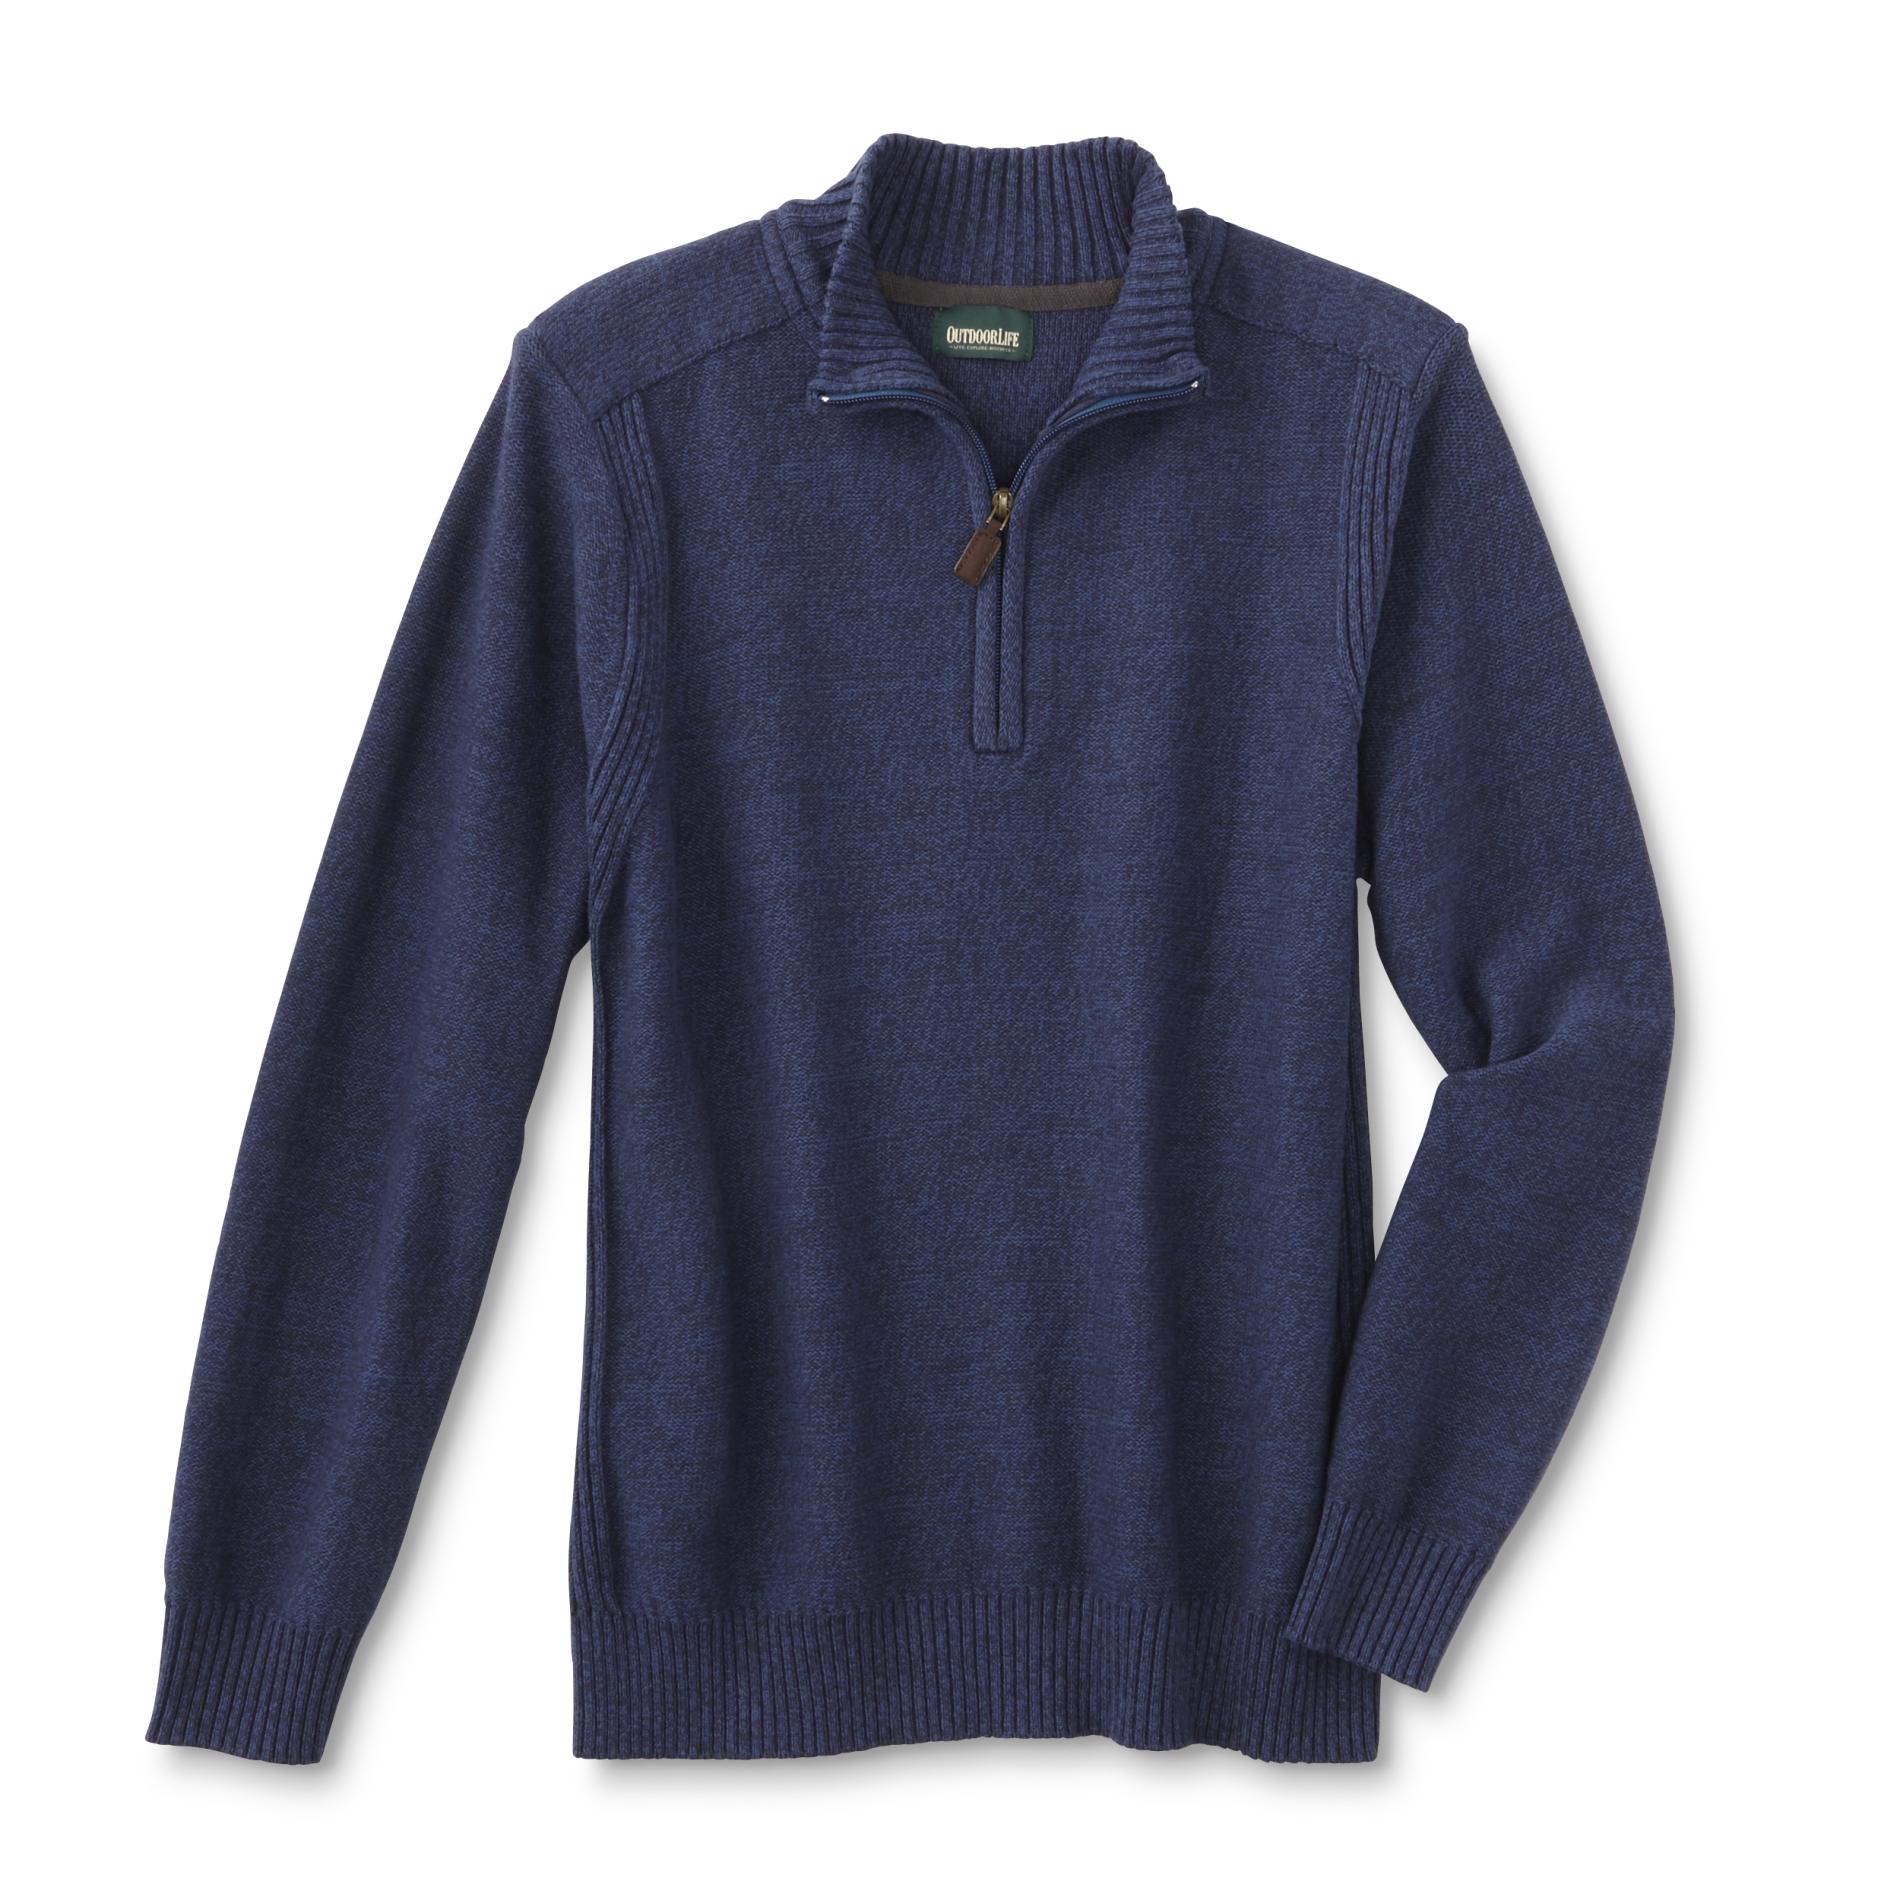 Outdoor Life Men's Quarter-Zip Sweater